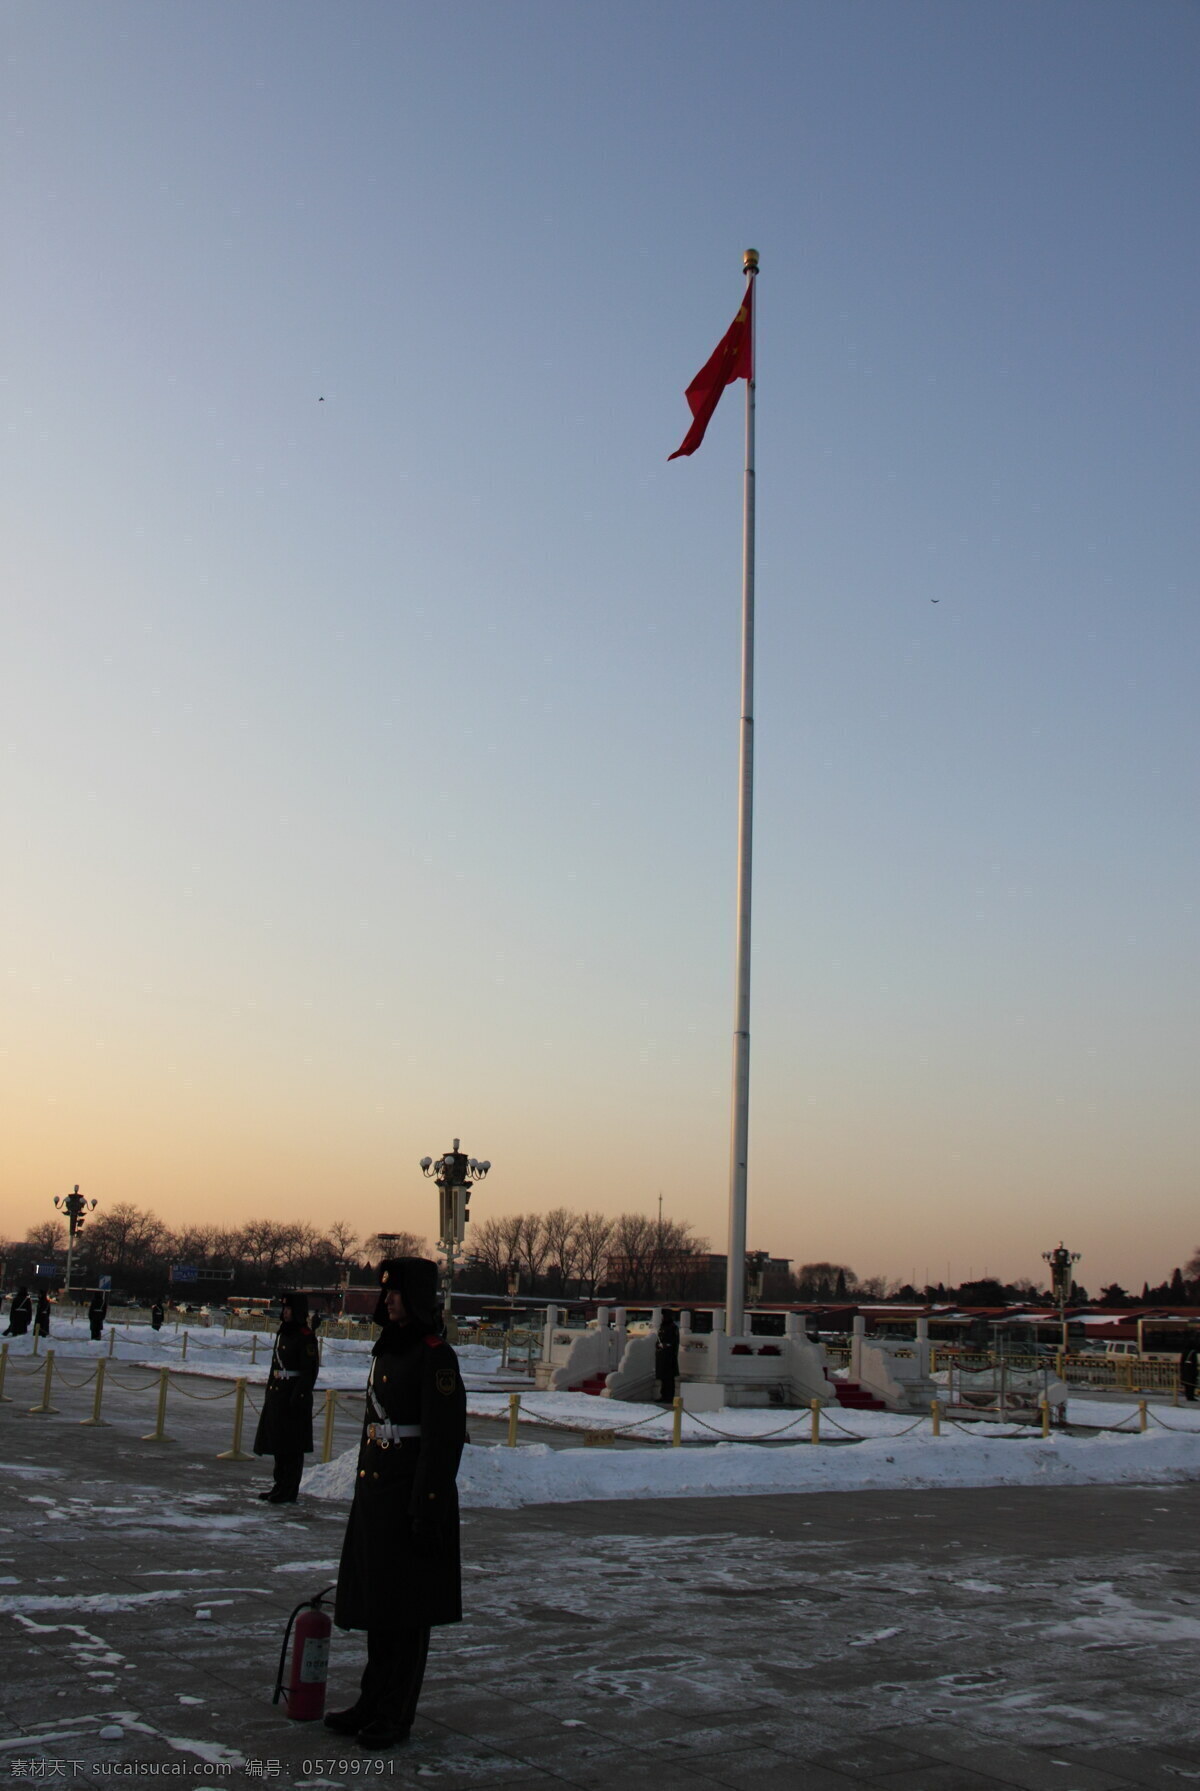 天安门广场 哨兵 中国 北京 武警 站岗 执勤 警卫 雪地 五星红旗 军人 国旗 国内旅游 旅游摄影